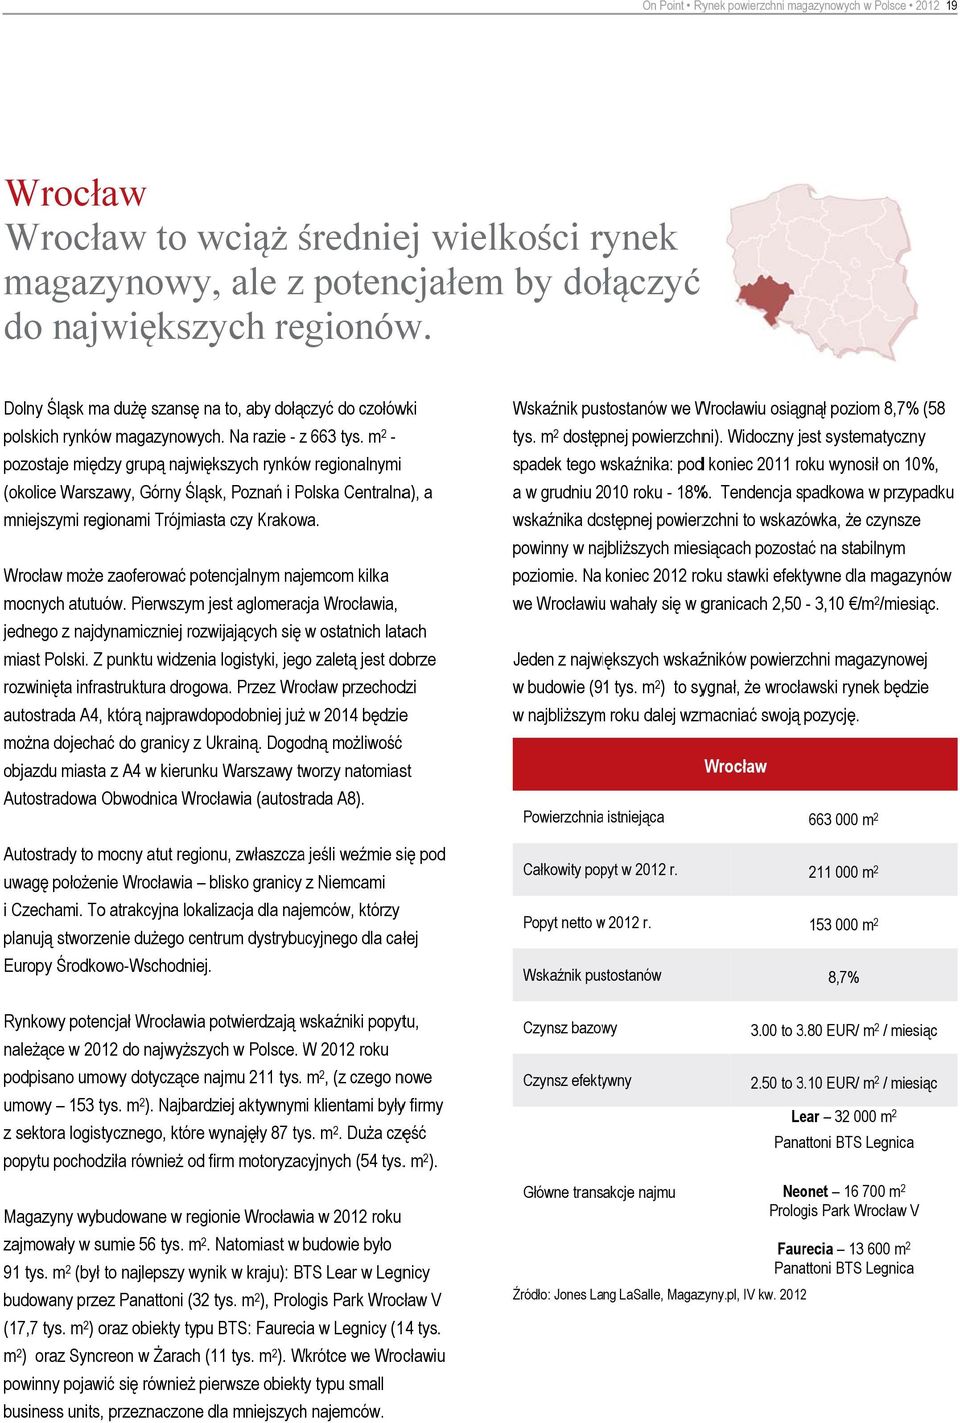 m 2 - pozostaje między grupą największych rynków regionalnymi (okolice Warszawy, Górny Śląsk, Poznań i Polska Centralna), a mniejszymi regionami Trójmiasta czy Krakowa.